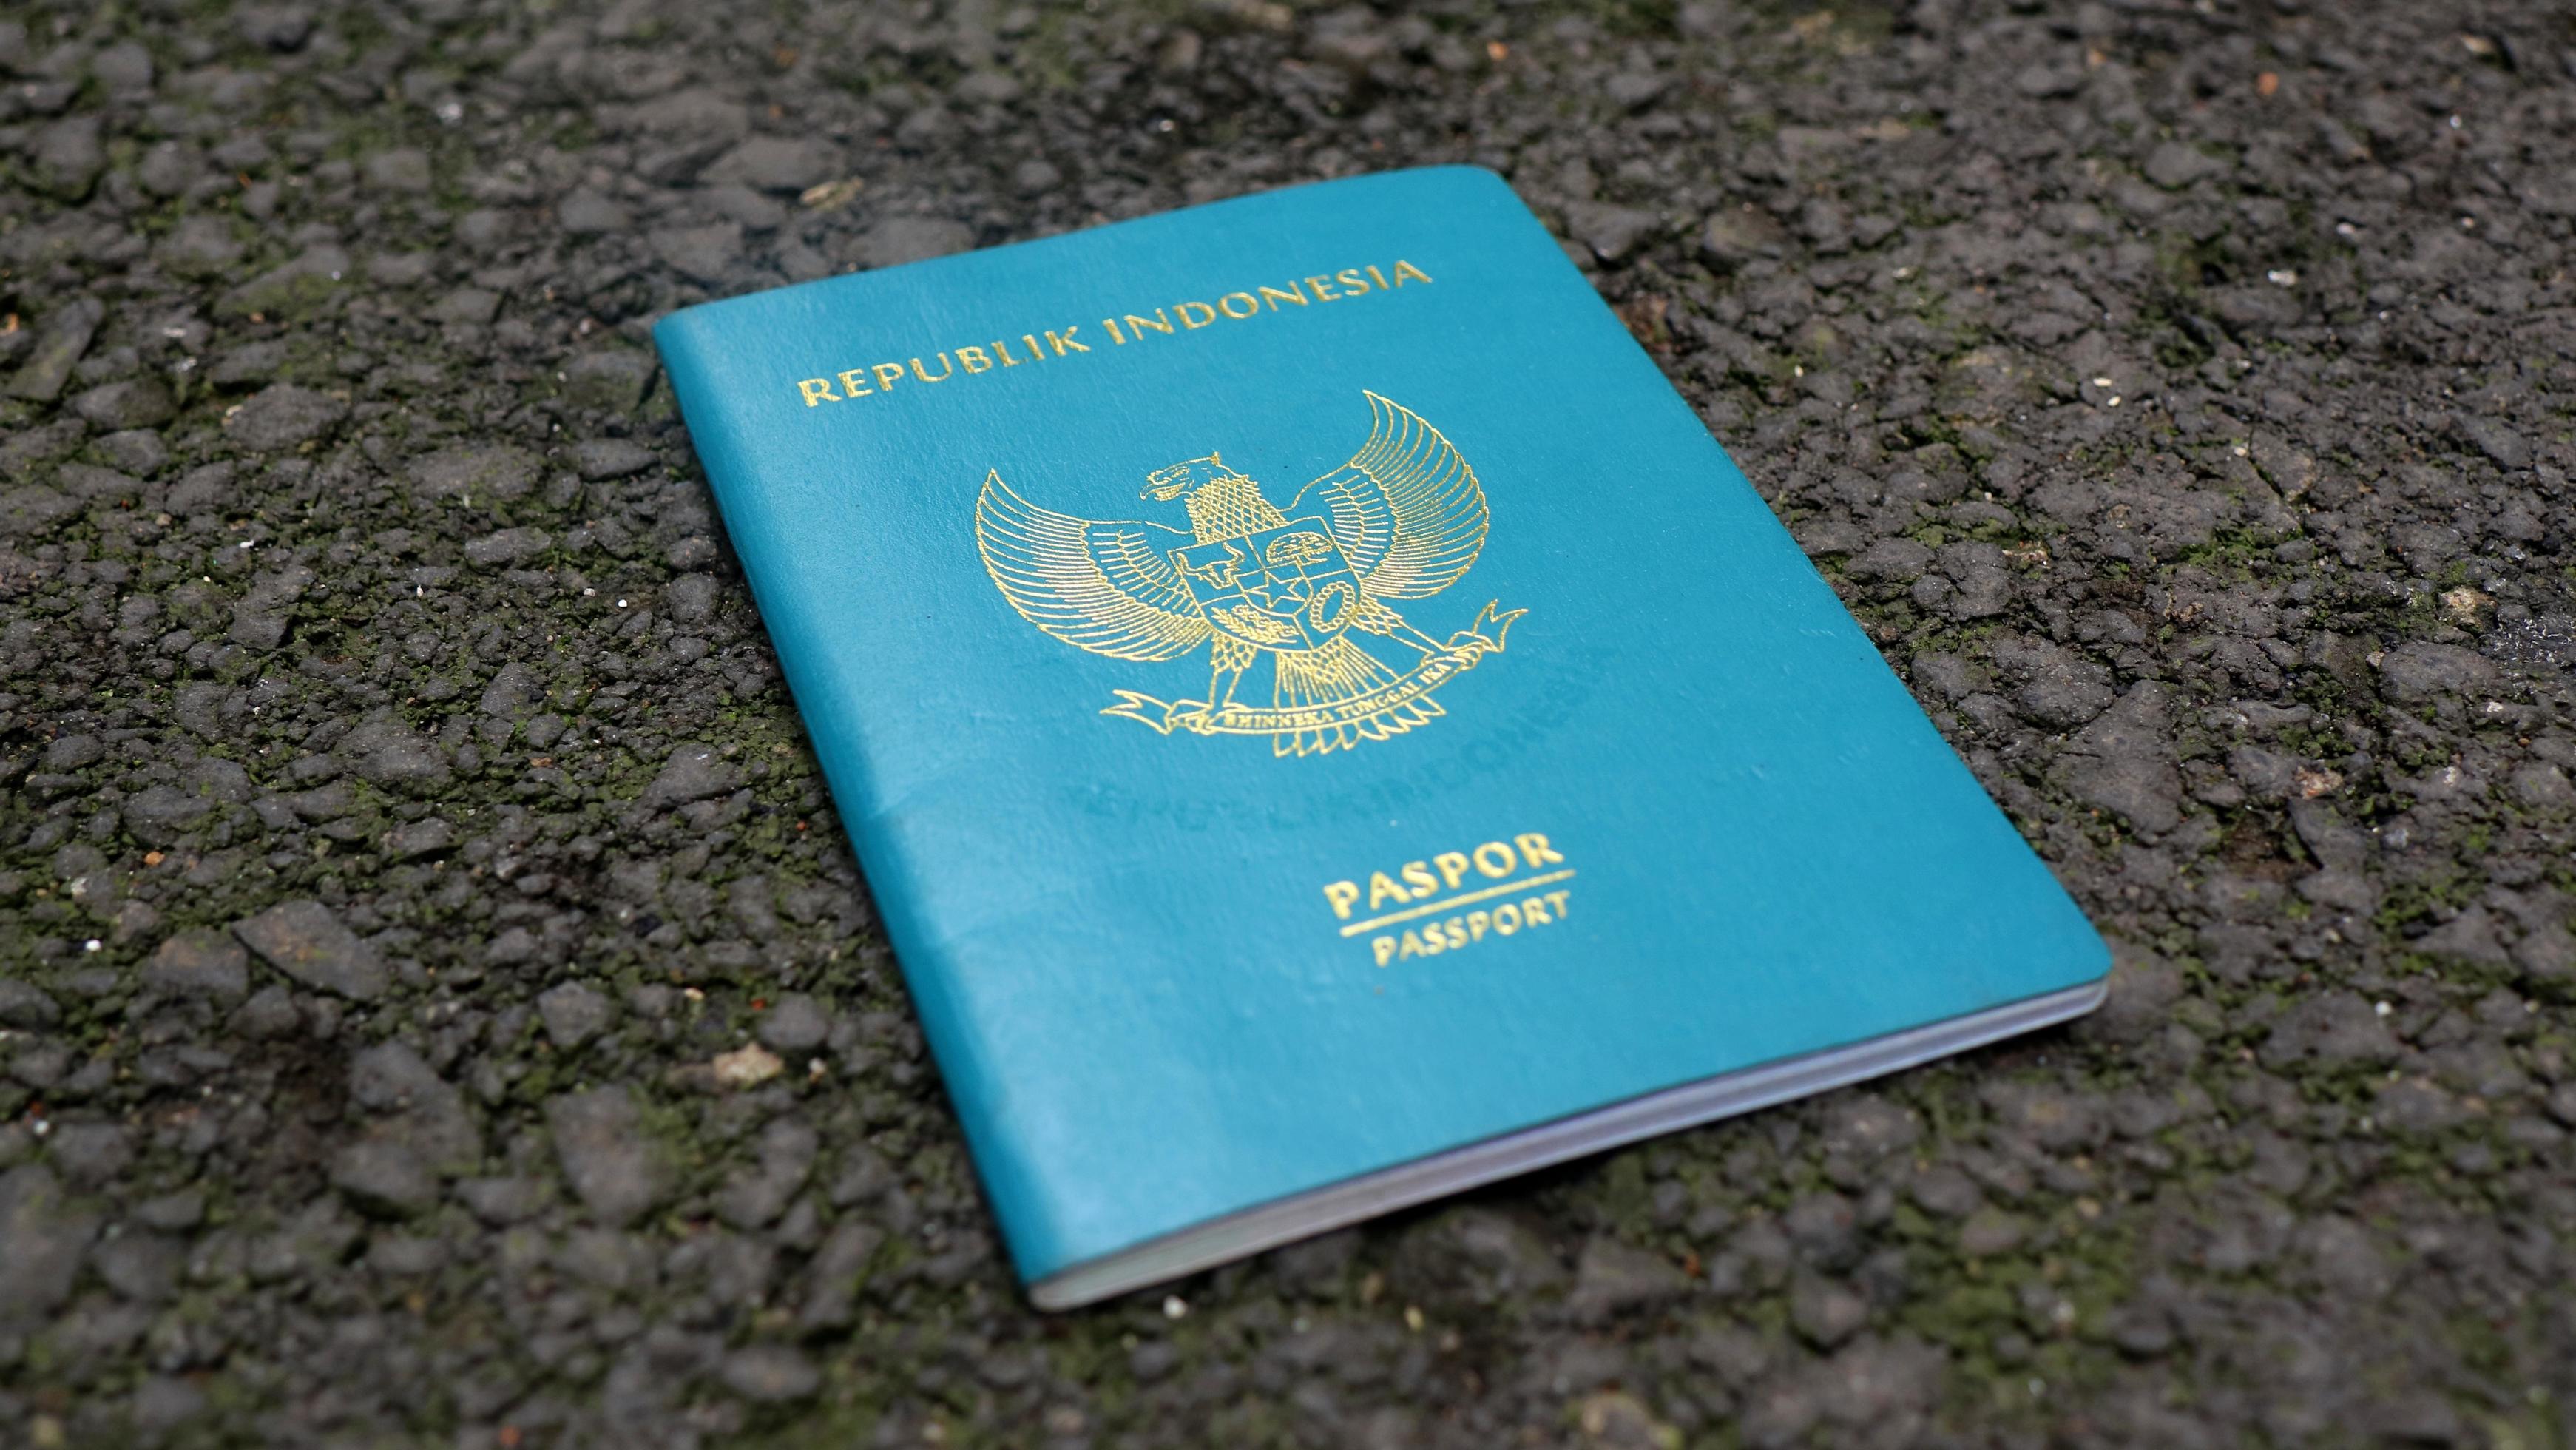 republic of indonesia passport